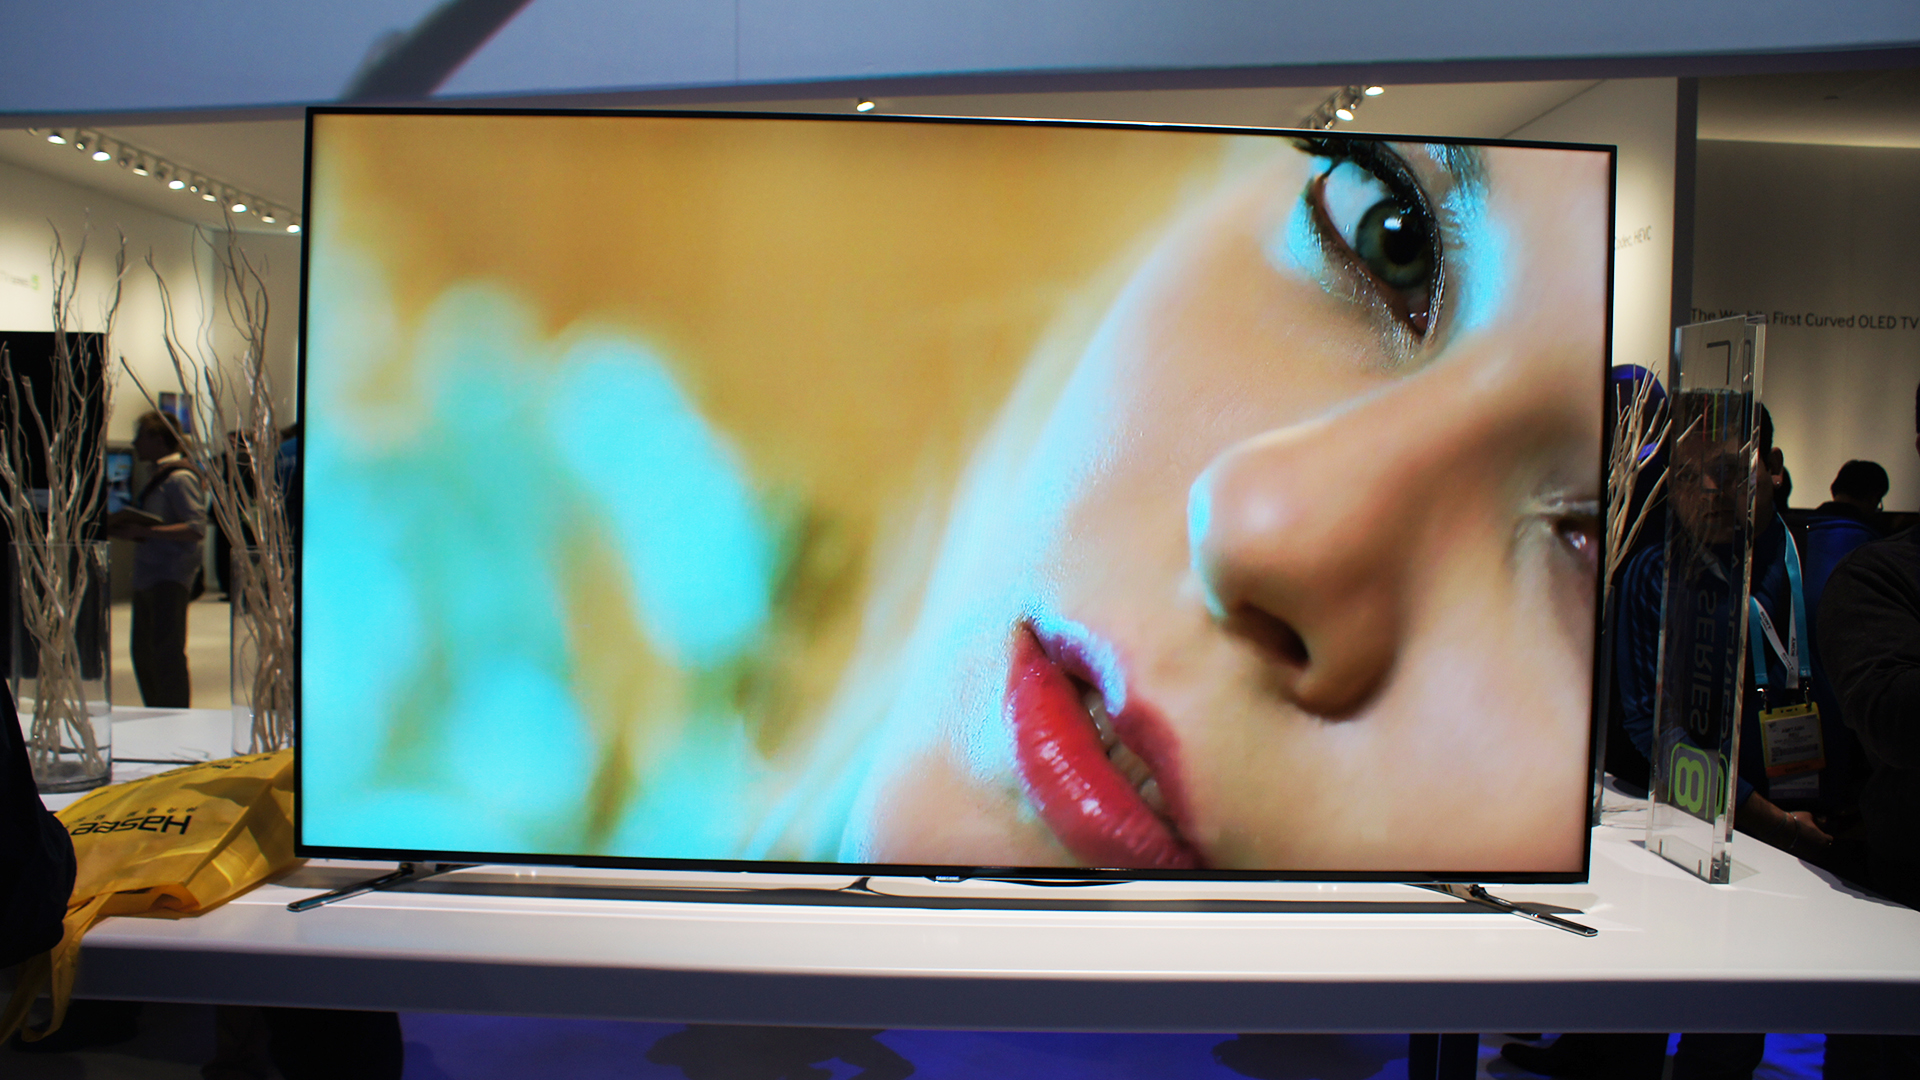 Реклама телевизоров видео. Samsung Smart TV f8000. Телевизор LG 8000. Телевизор цветного изображения с жидкокристаллическим экраном. Изображение на экране телевизора.